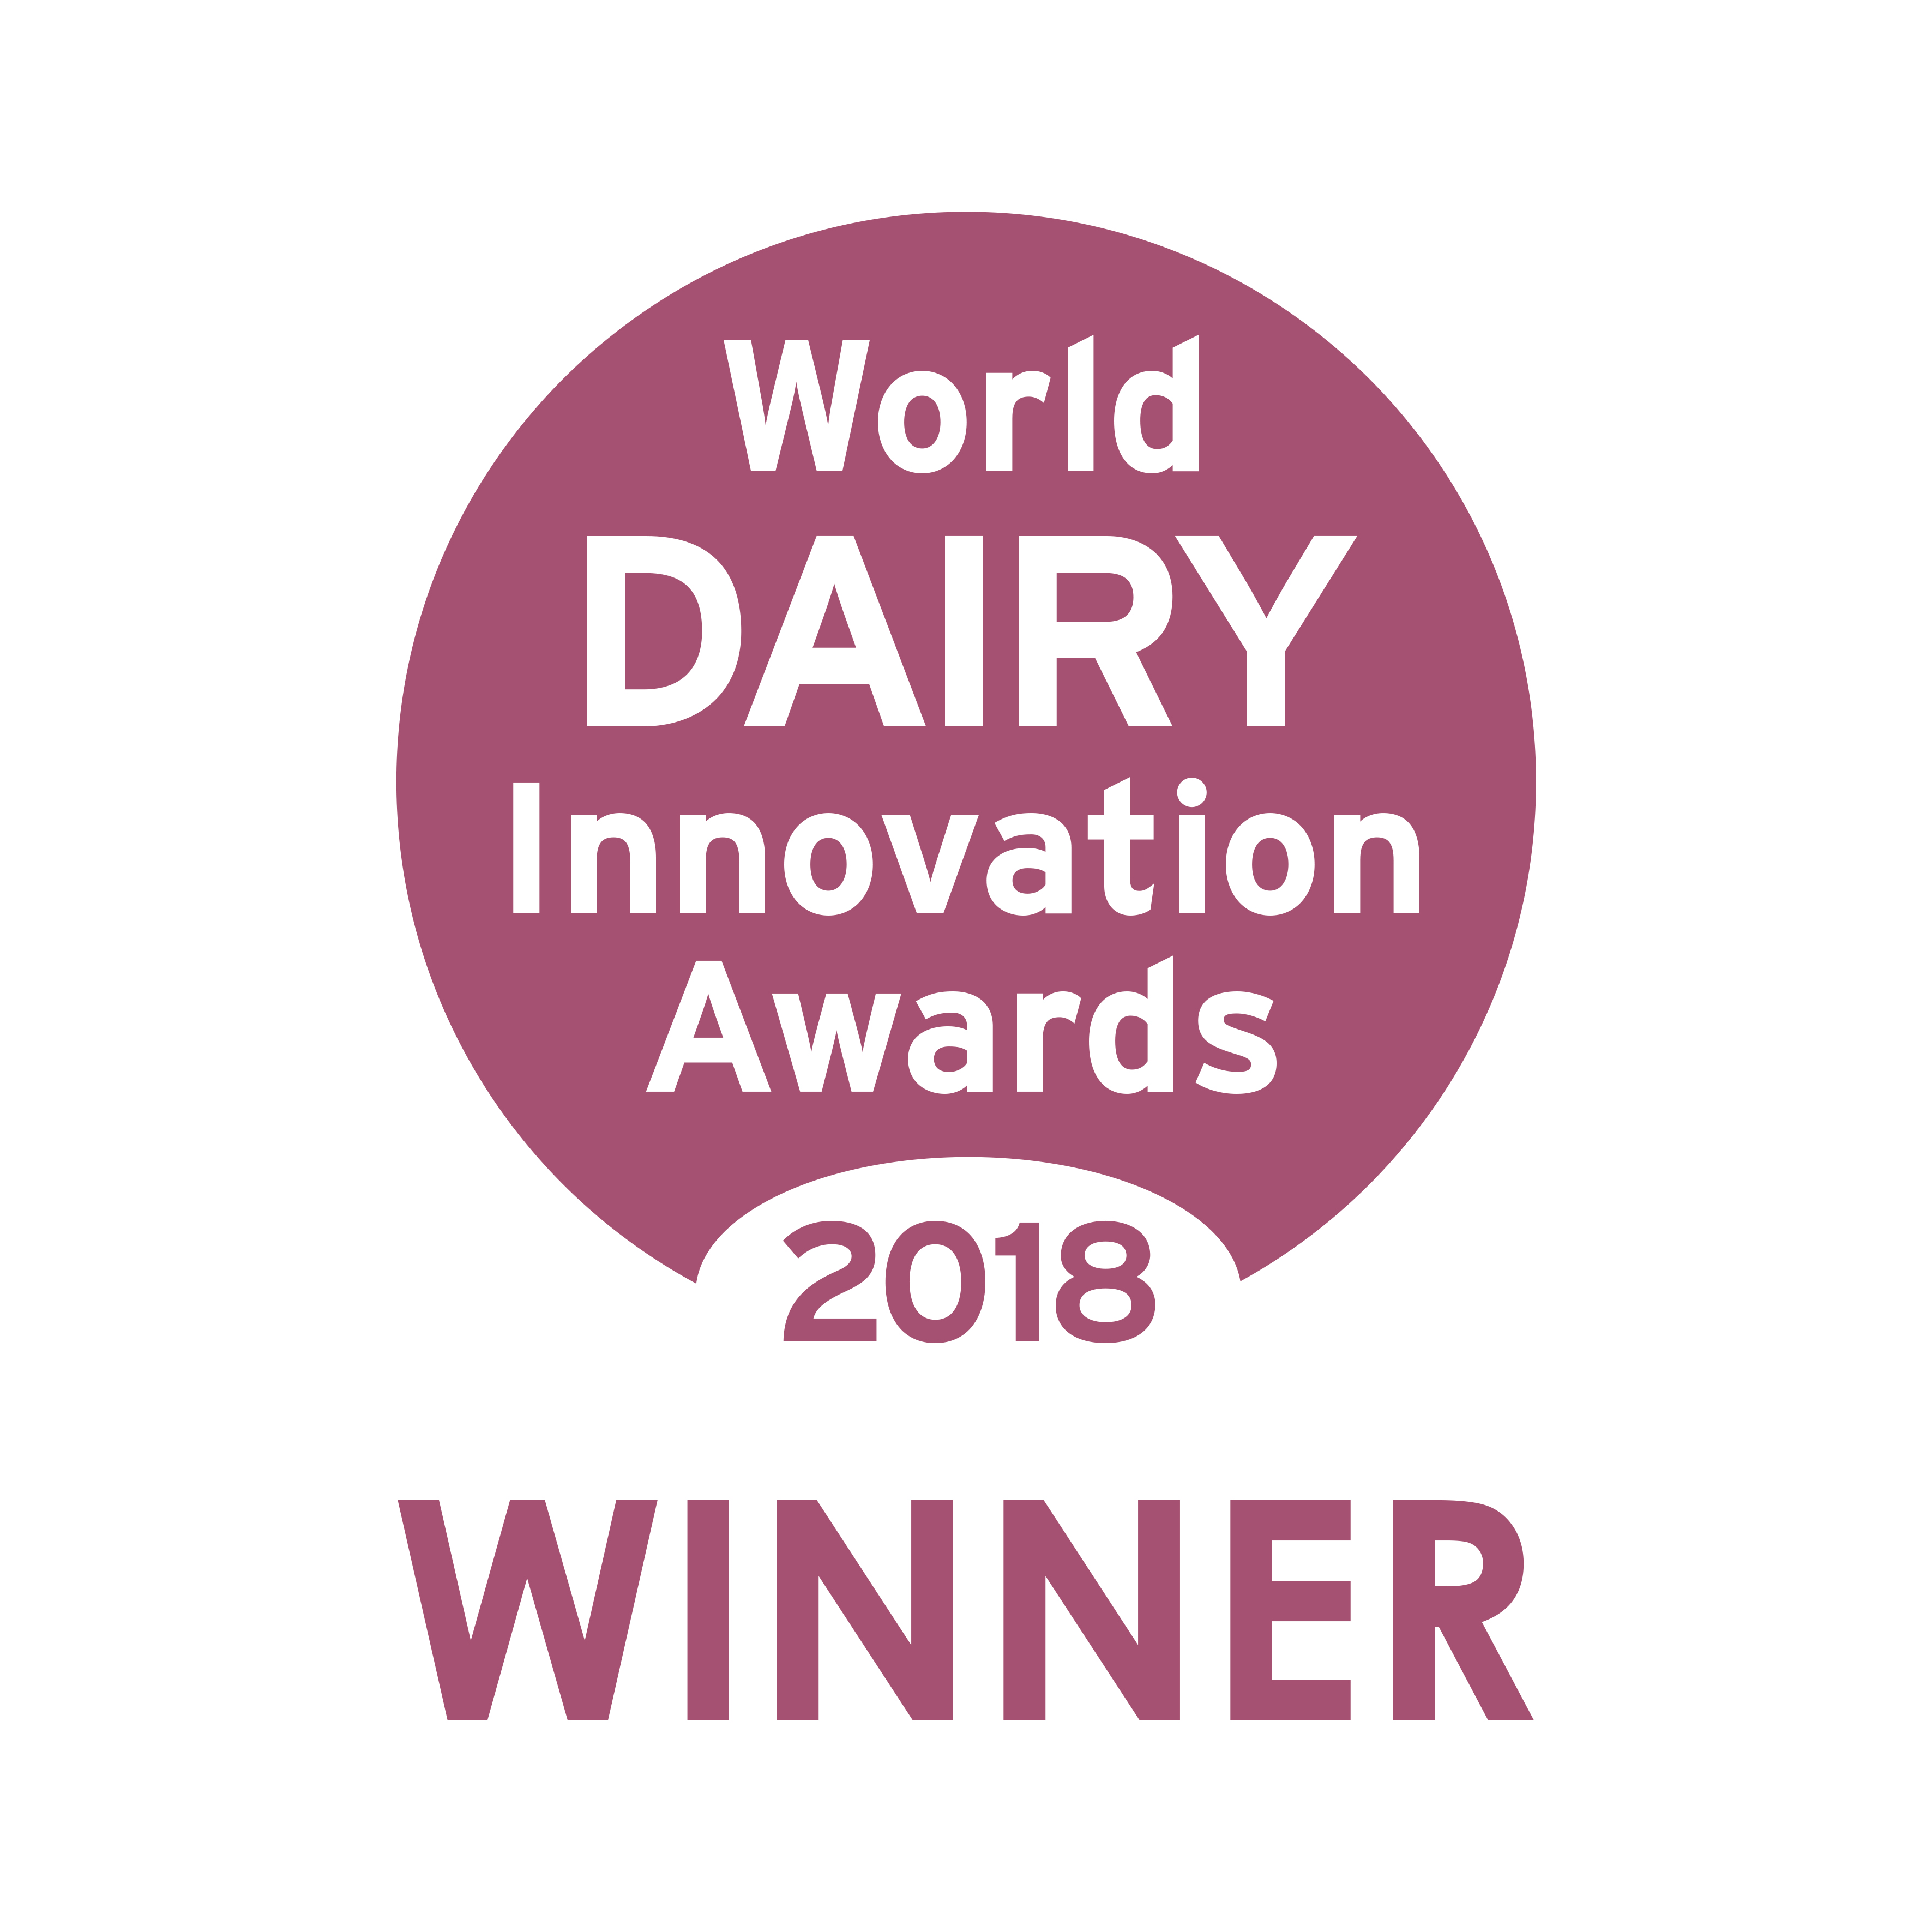 World Dairy Innovation Awards -2018 - Winner